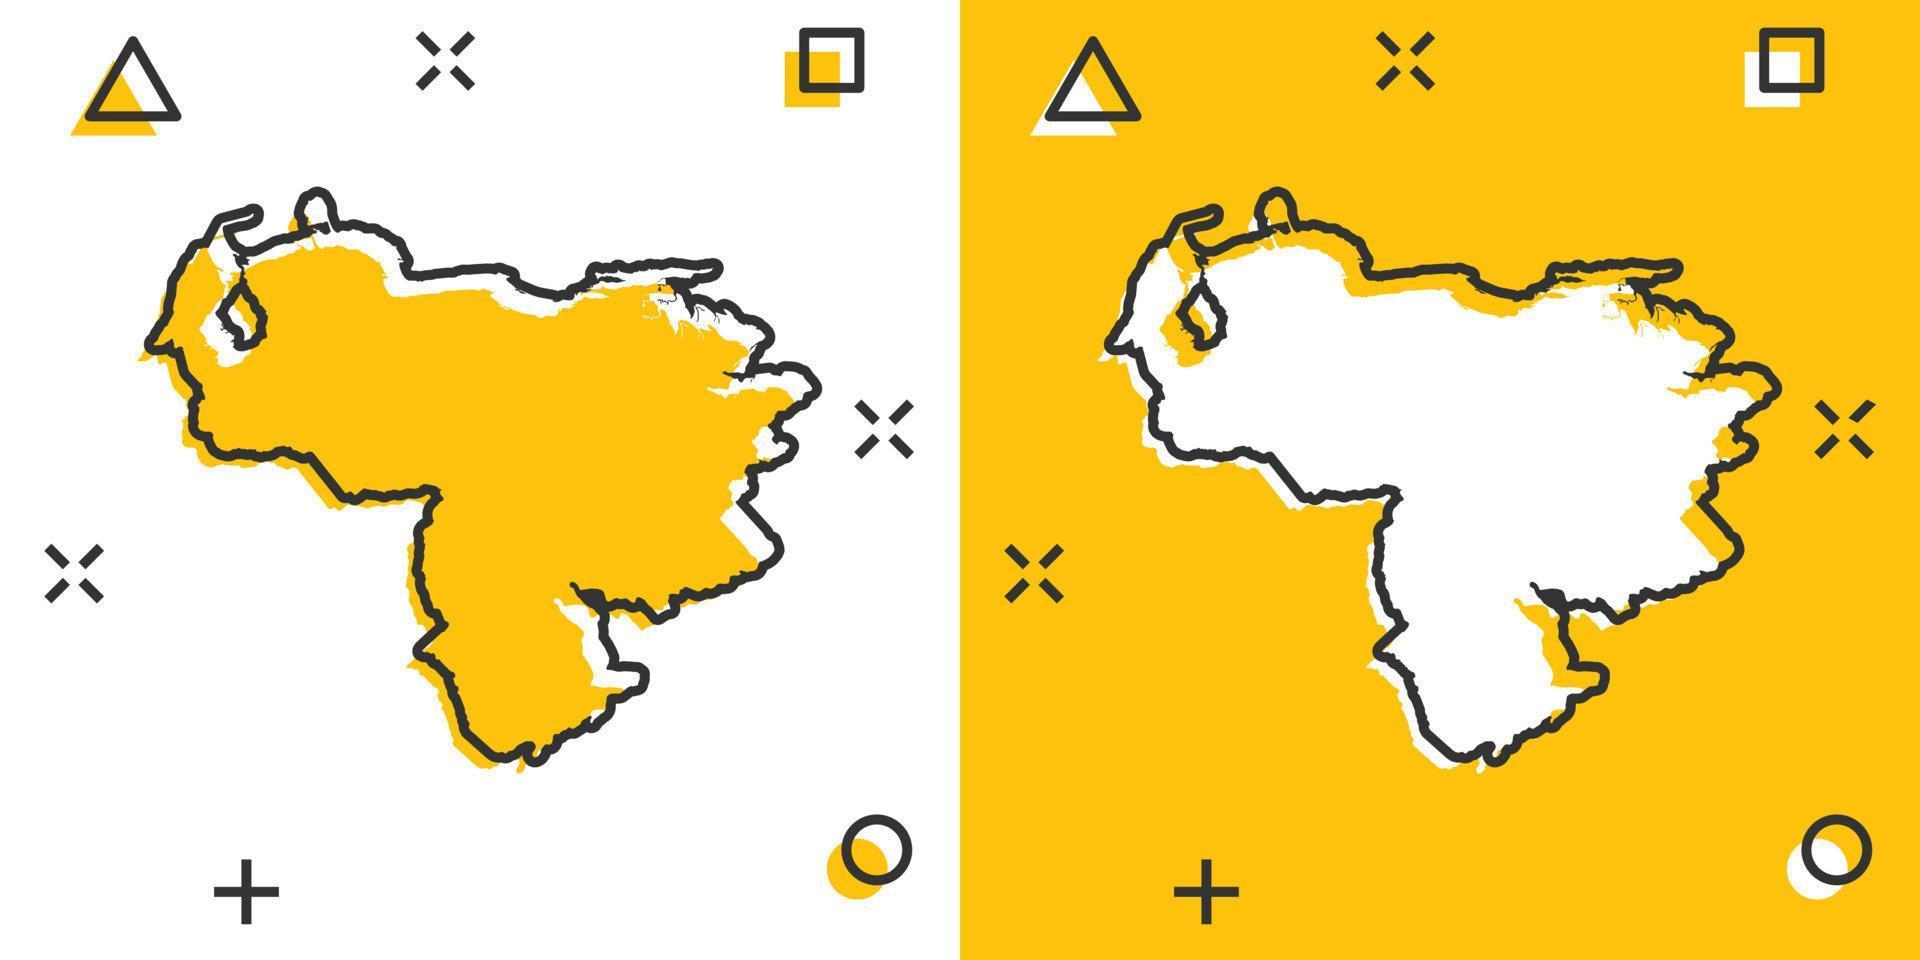 icône de carte du venezuela de dessin animé de vecteur dans le style comique. pictogramme d'illustration de signe du venezuela. carte de cartographie concept d'effet d'éclaboussure d'entreprise.